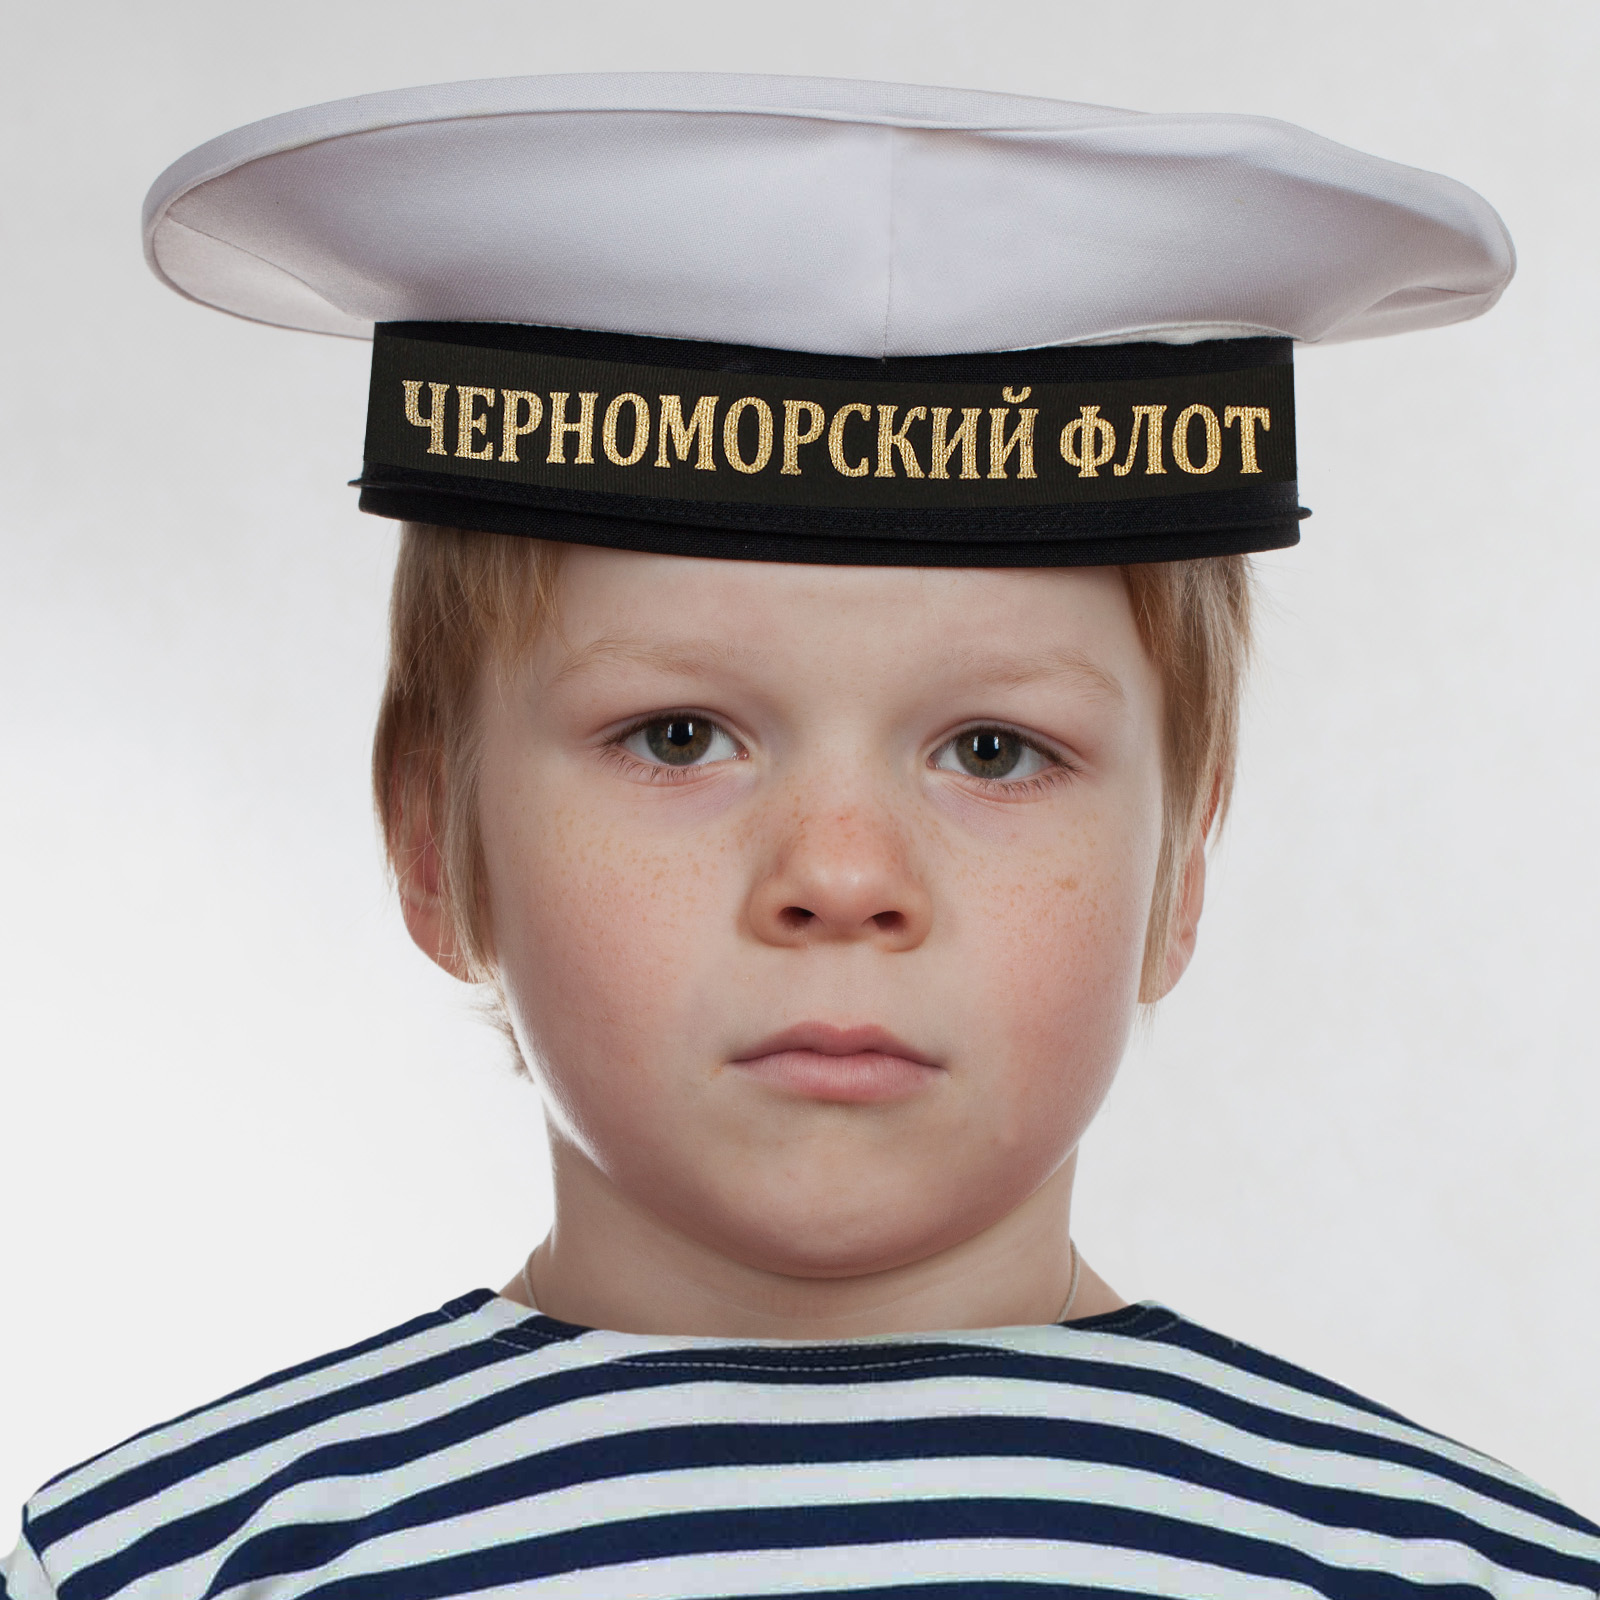 Купить бескозырку "Черноморский флот" белого цвета по выгодной цене